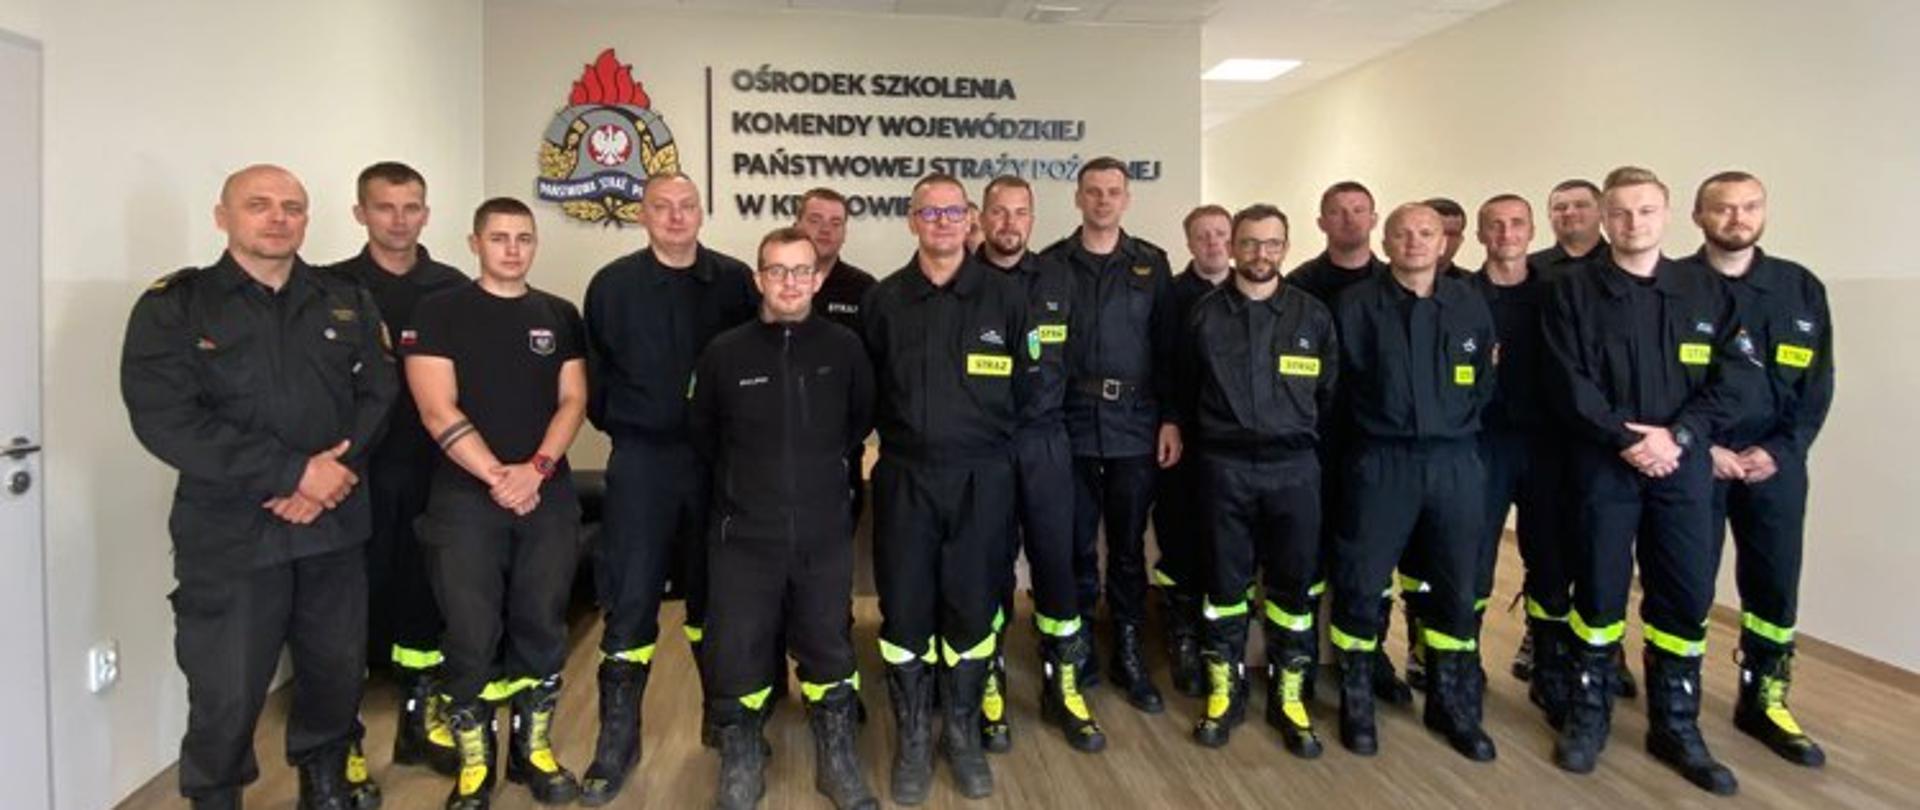 Szkolenie z ratownictwa chemicznego i ekologicznego realizowanego przez KSRG w zakresie podstawowym dla strażaków-ratowników OSP.